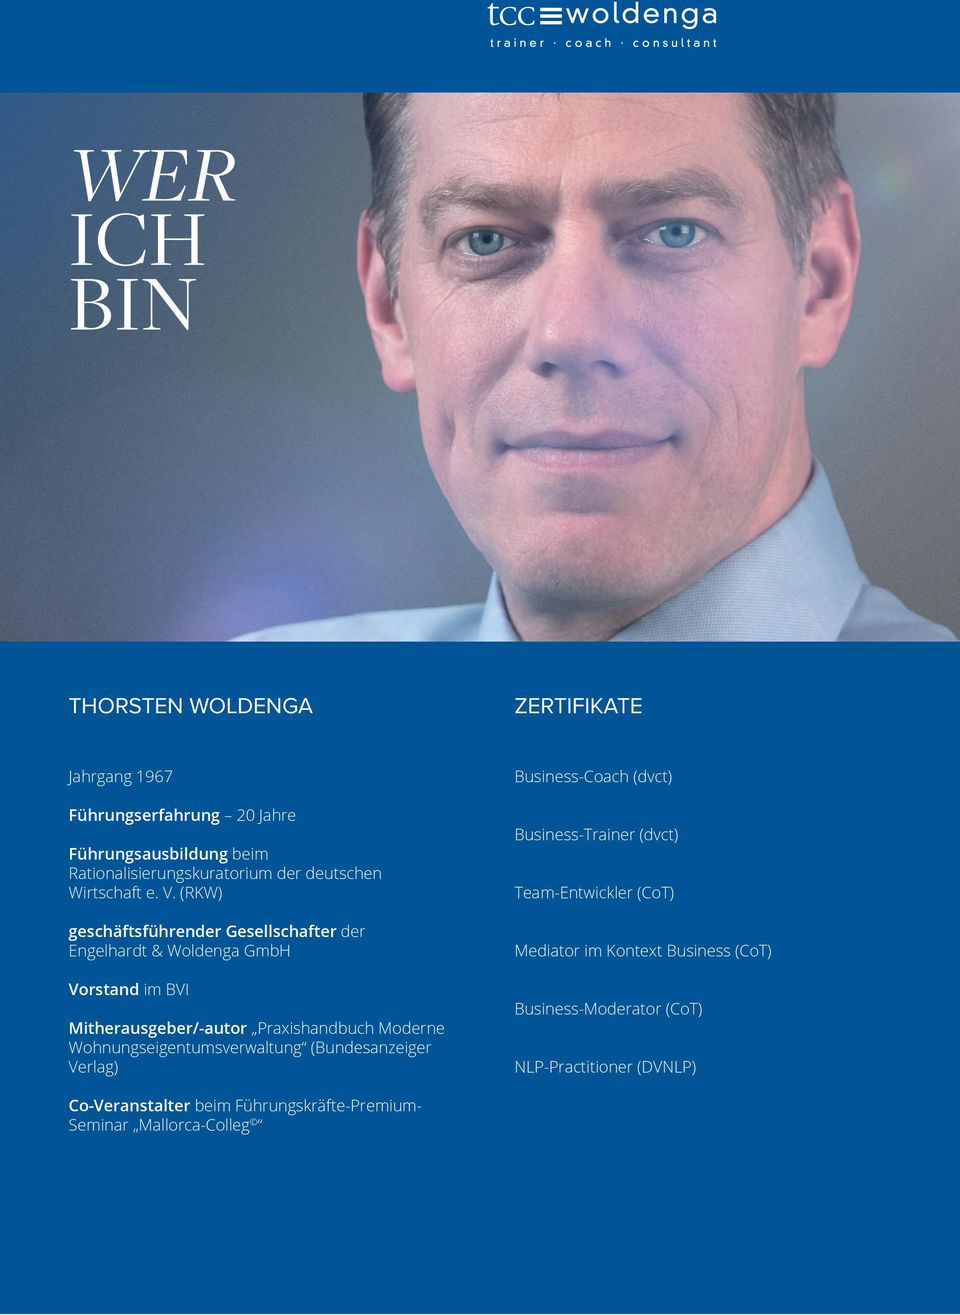 (RKW) geschäftsführender Gesellschafter der Engelhardt & Woldenga GmbH Vorstand im BVI Mitherausgeber/-autor Praxishandbuch Moderne